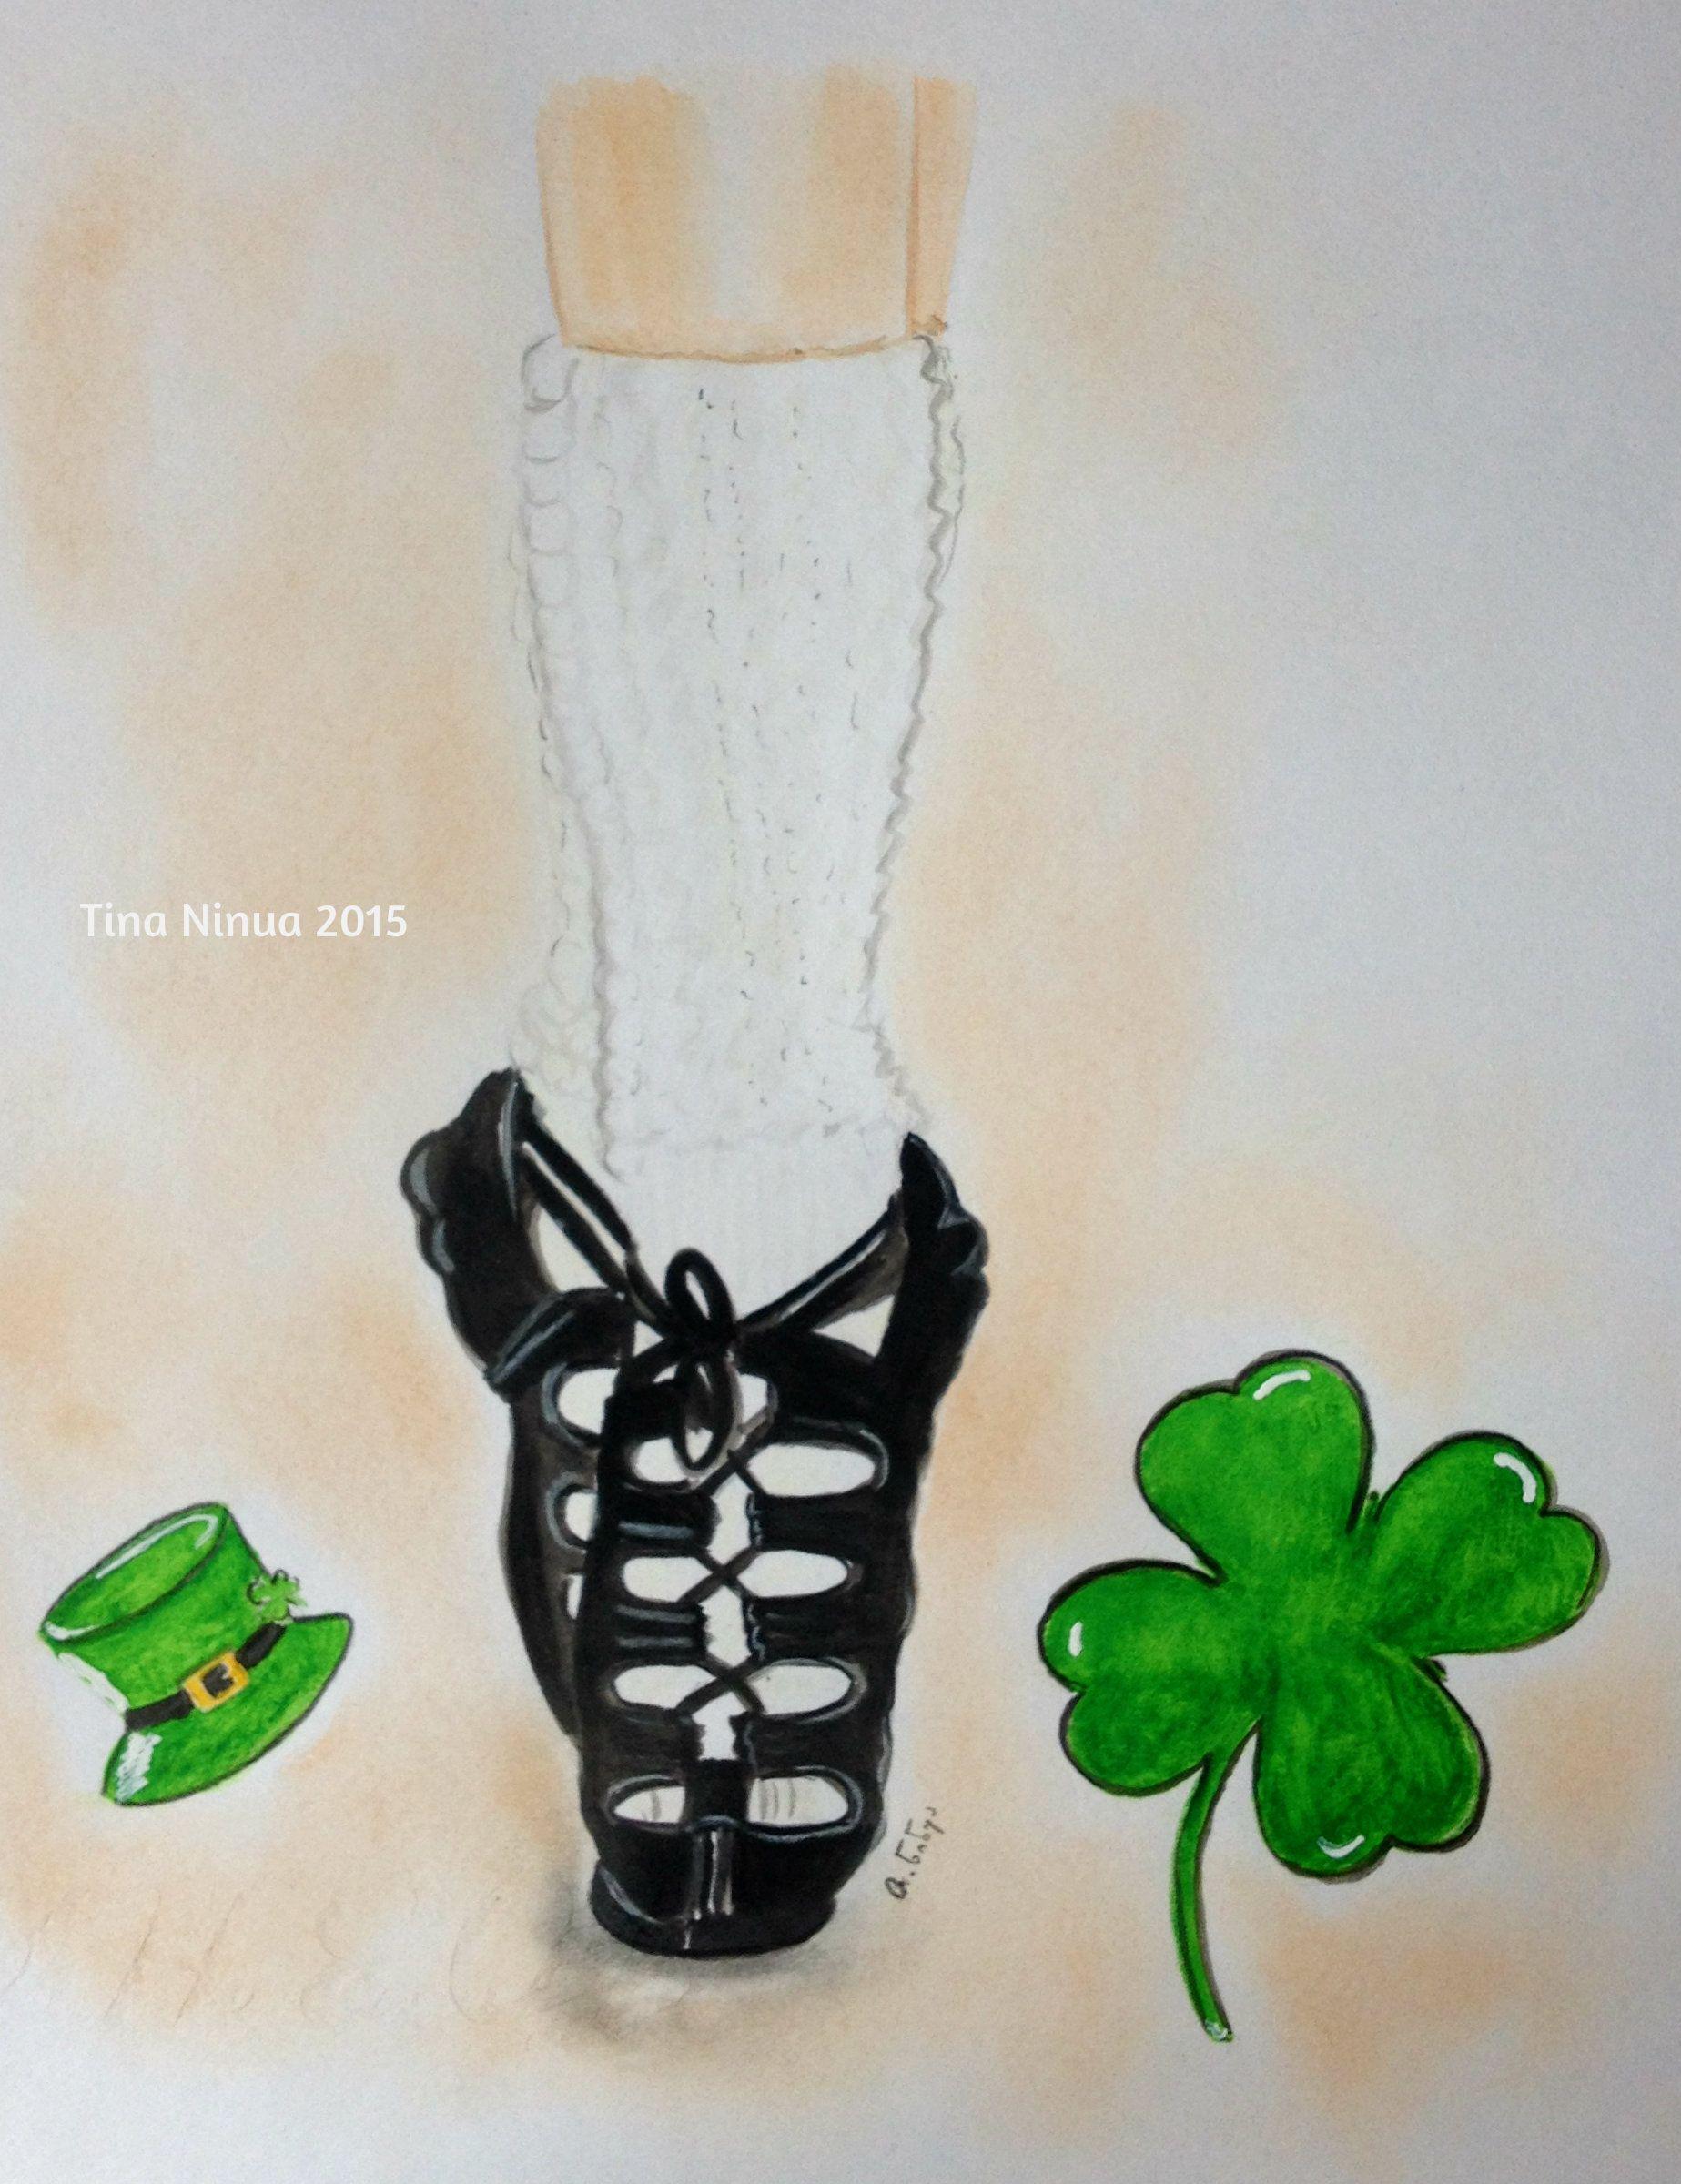 irishdancing #irish #dance #shoes #ireland #illustration #drawing